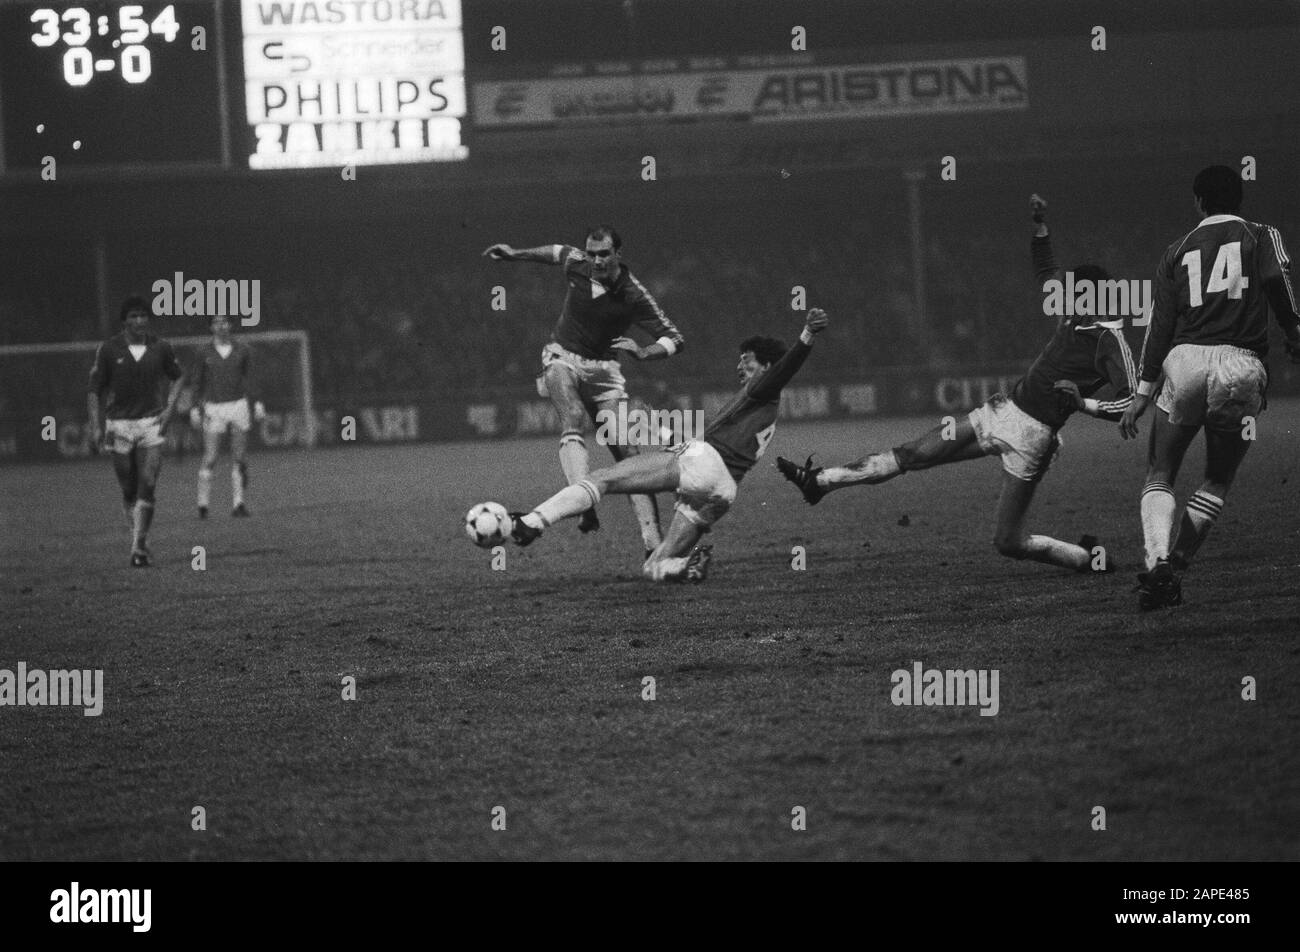 AZ 67 against PSV 0-2. metgod, Brandts en Jonker in action Date: 13 February 1982 Location: Alkmaar Keywords: sport, football Personname: Brandts, Ernie, Jonker, Jos, Metgod, John Institution name: PSV Stock Photo